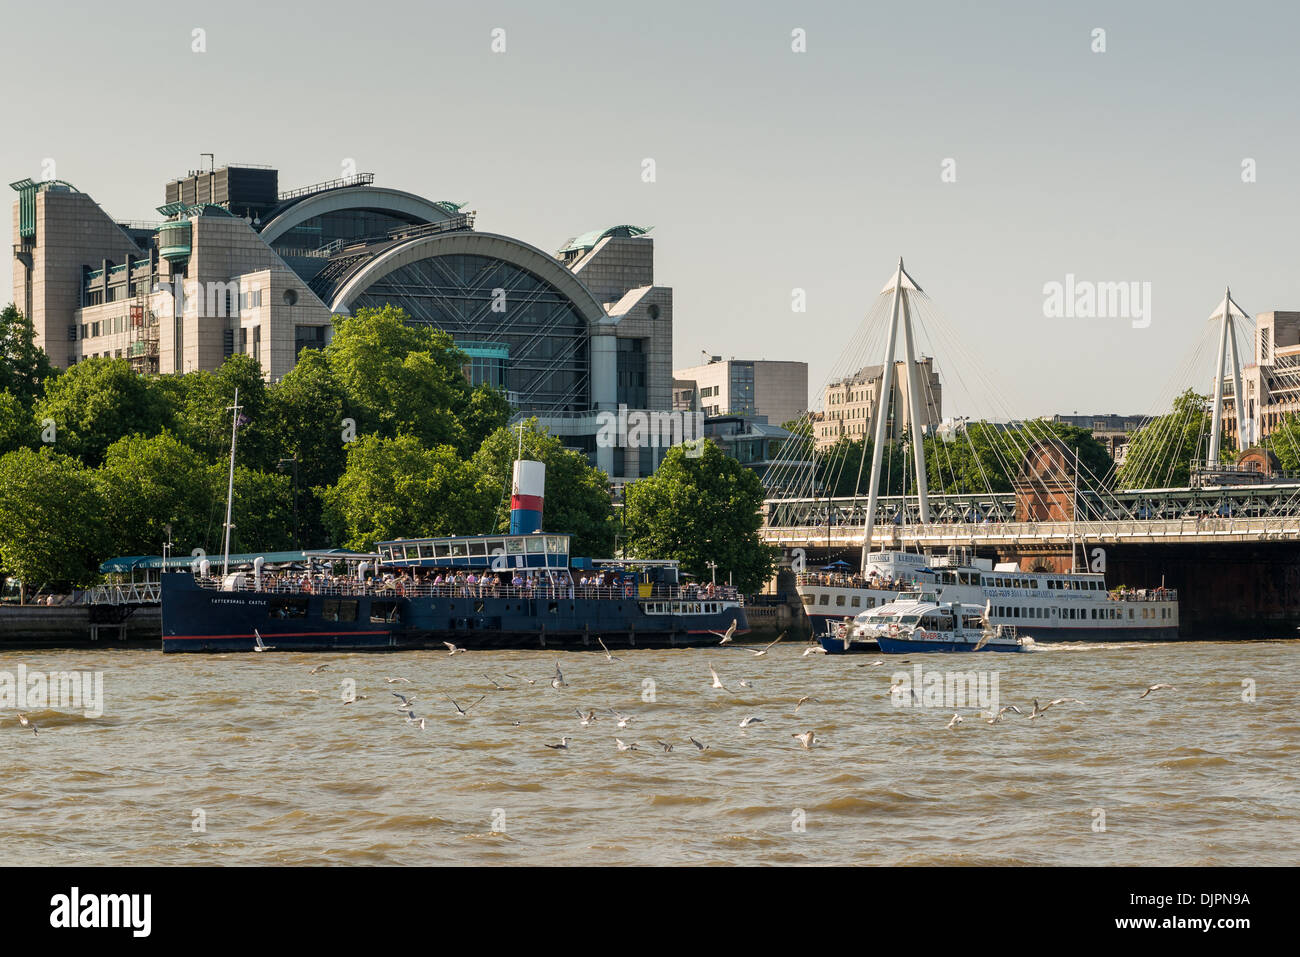 Möwen auf der Themse, Flussschifffahrt, Sportboote und Bahnhof Charing Cross Stockfoto